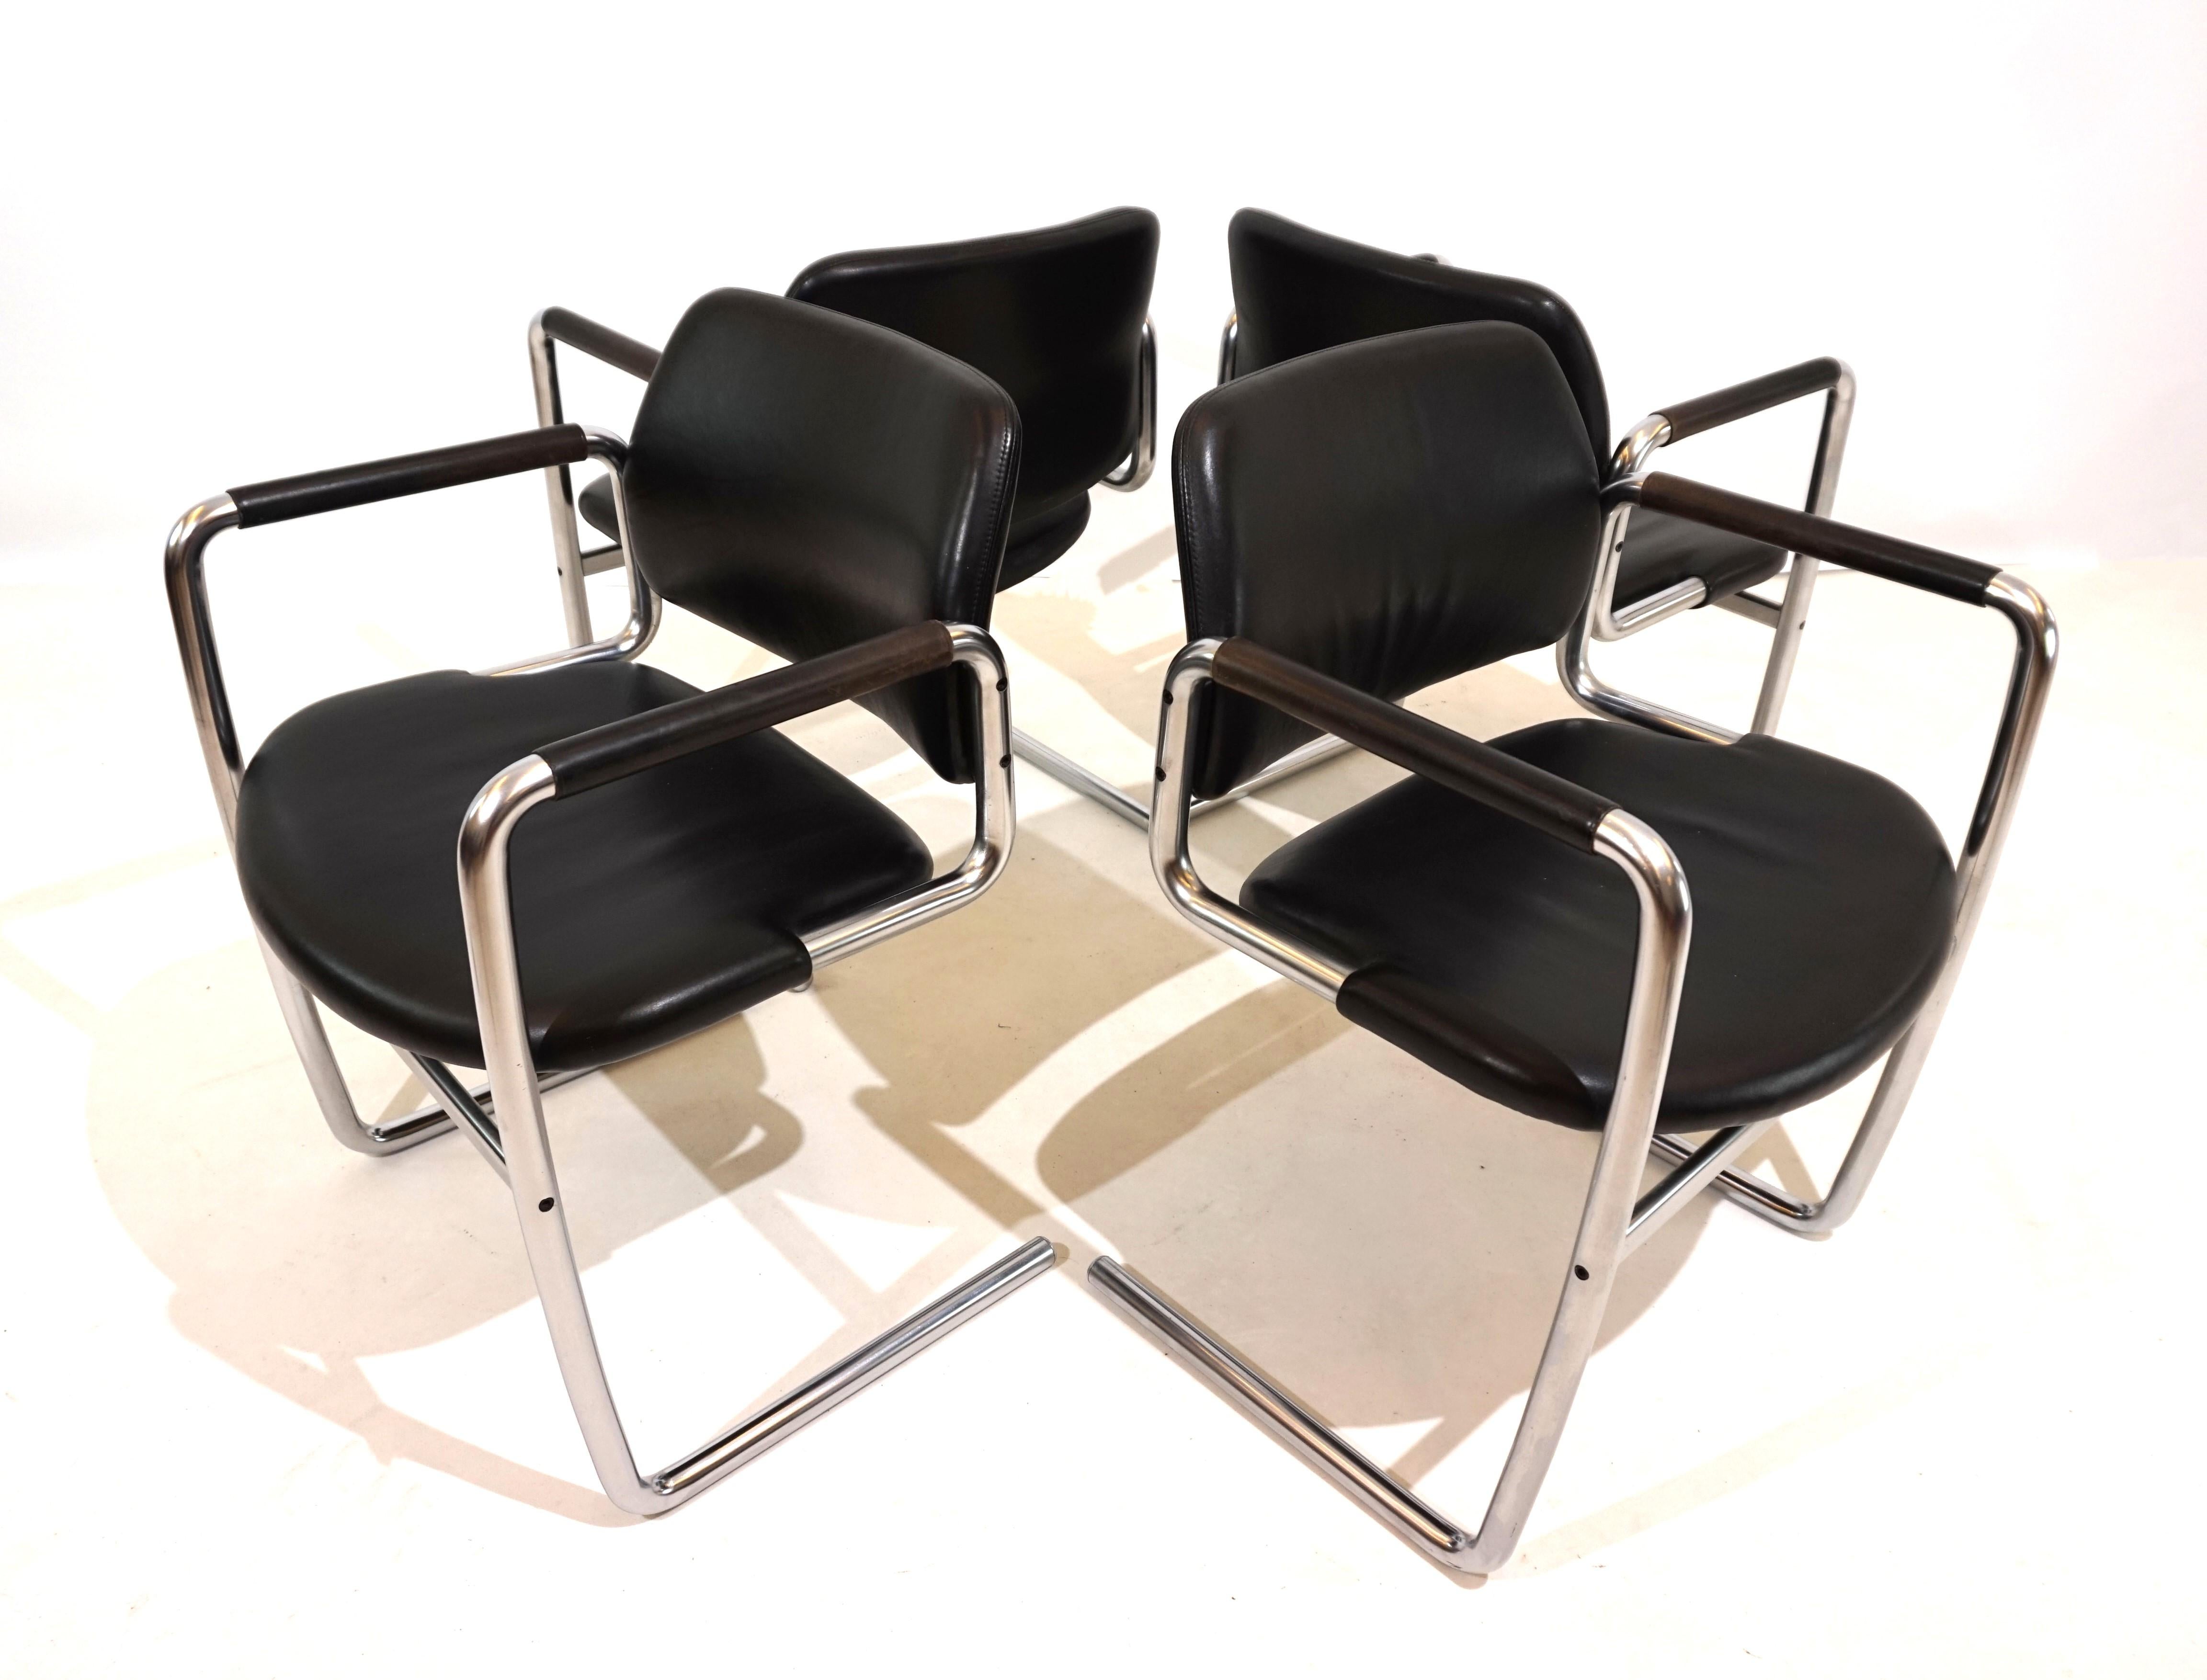 L'ensemble de 4 chaises luge en cuir noir est conçu dans le style typique de Kastholm. Le cadre métallique incurvé d'apparence solide ne soutient l'assise en cuir qu'aux extrémités avant, ce qui confère à la chaise une certaine légèreté. Les sièges